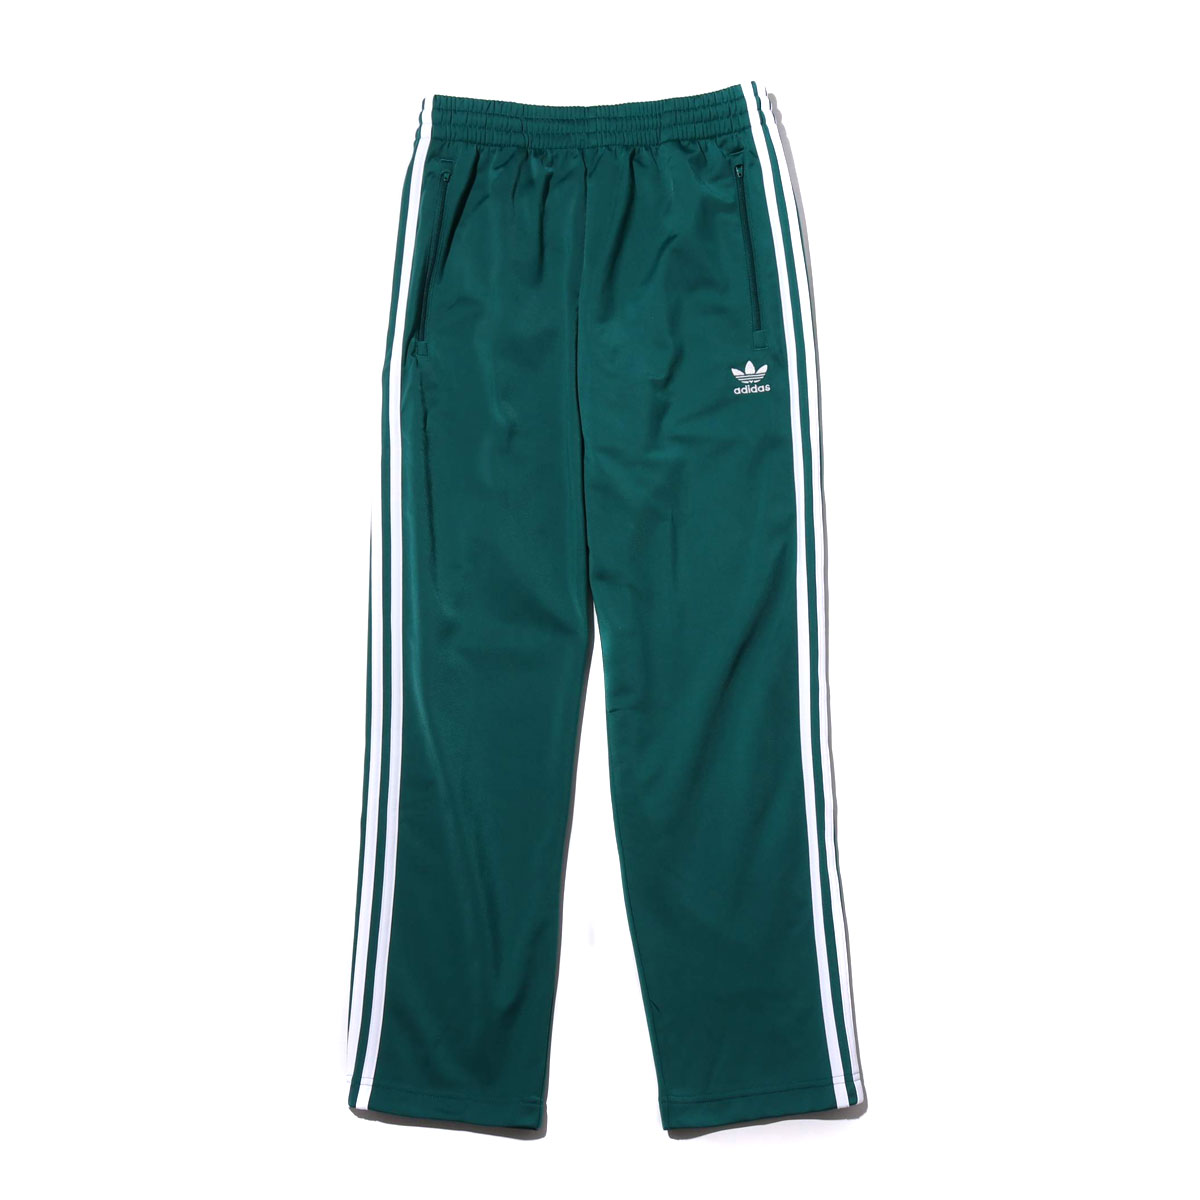 adidas noble green pants